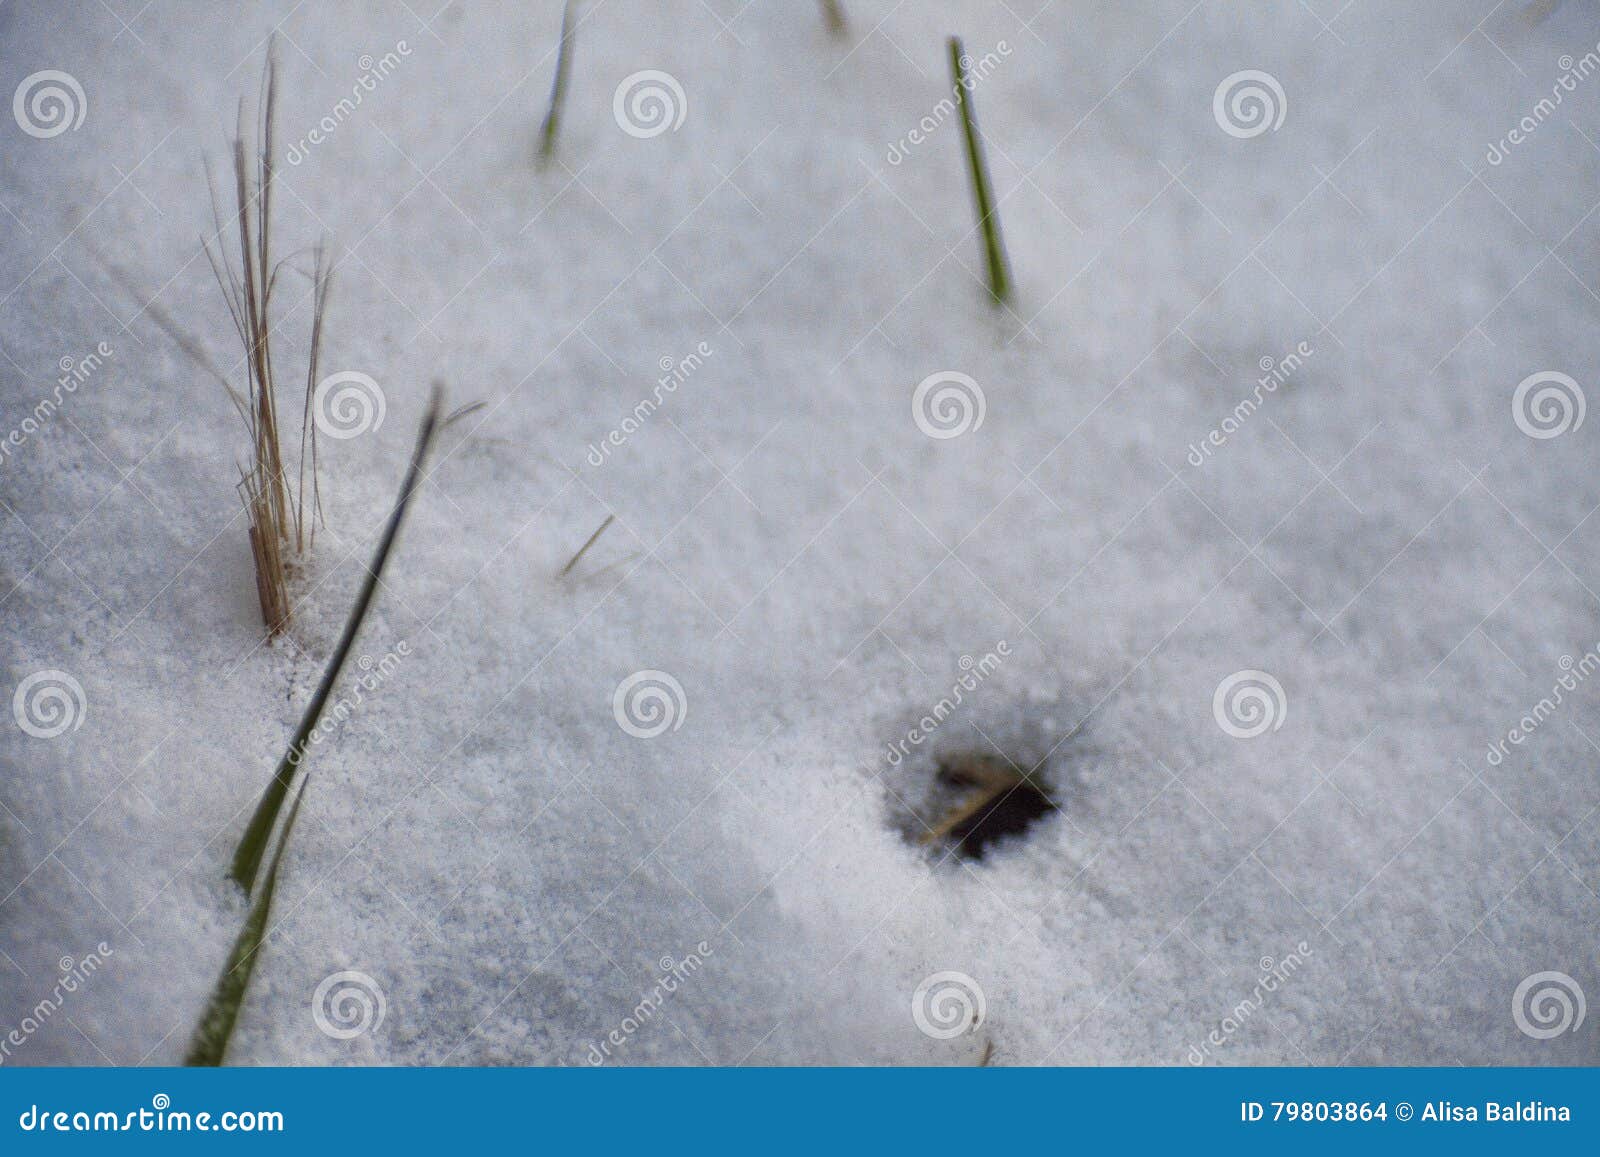 Weiße Schneeflocken auf einem blauen Hintergrund Schnee, Gras, usw. Winter Natur in Moskau fotografierend Fotos von Winterhintergründen für Design